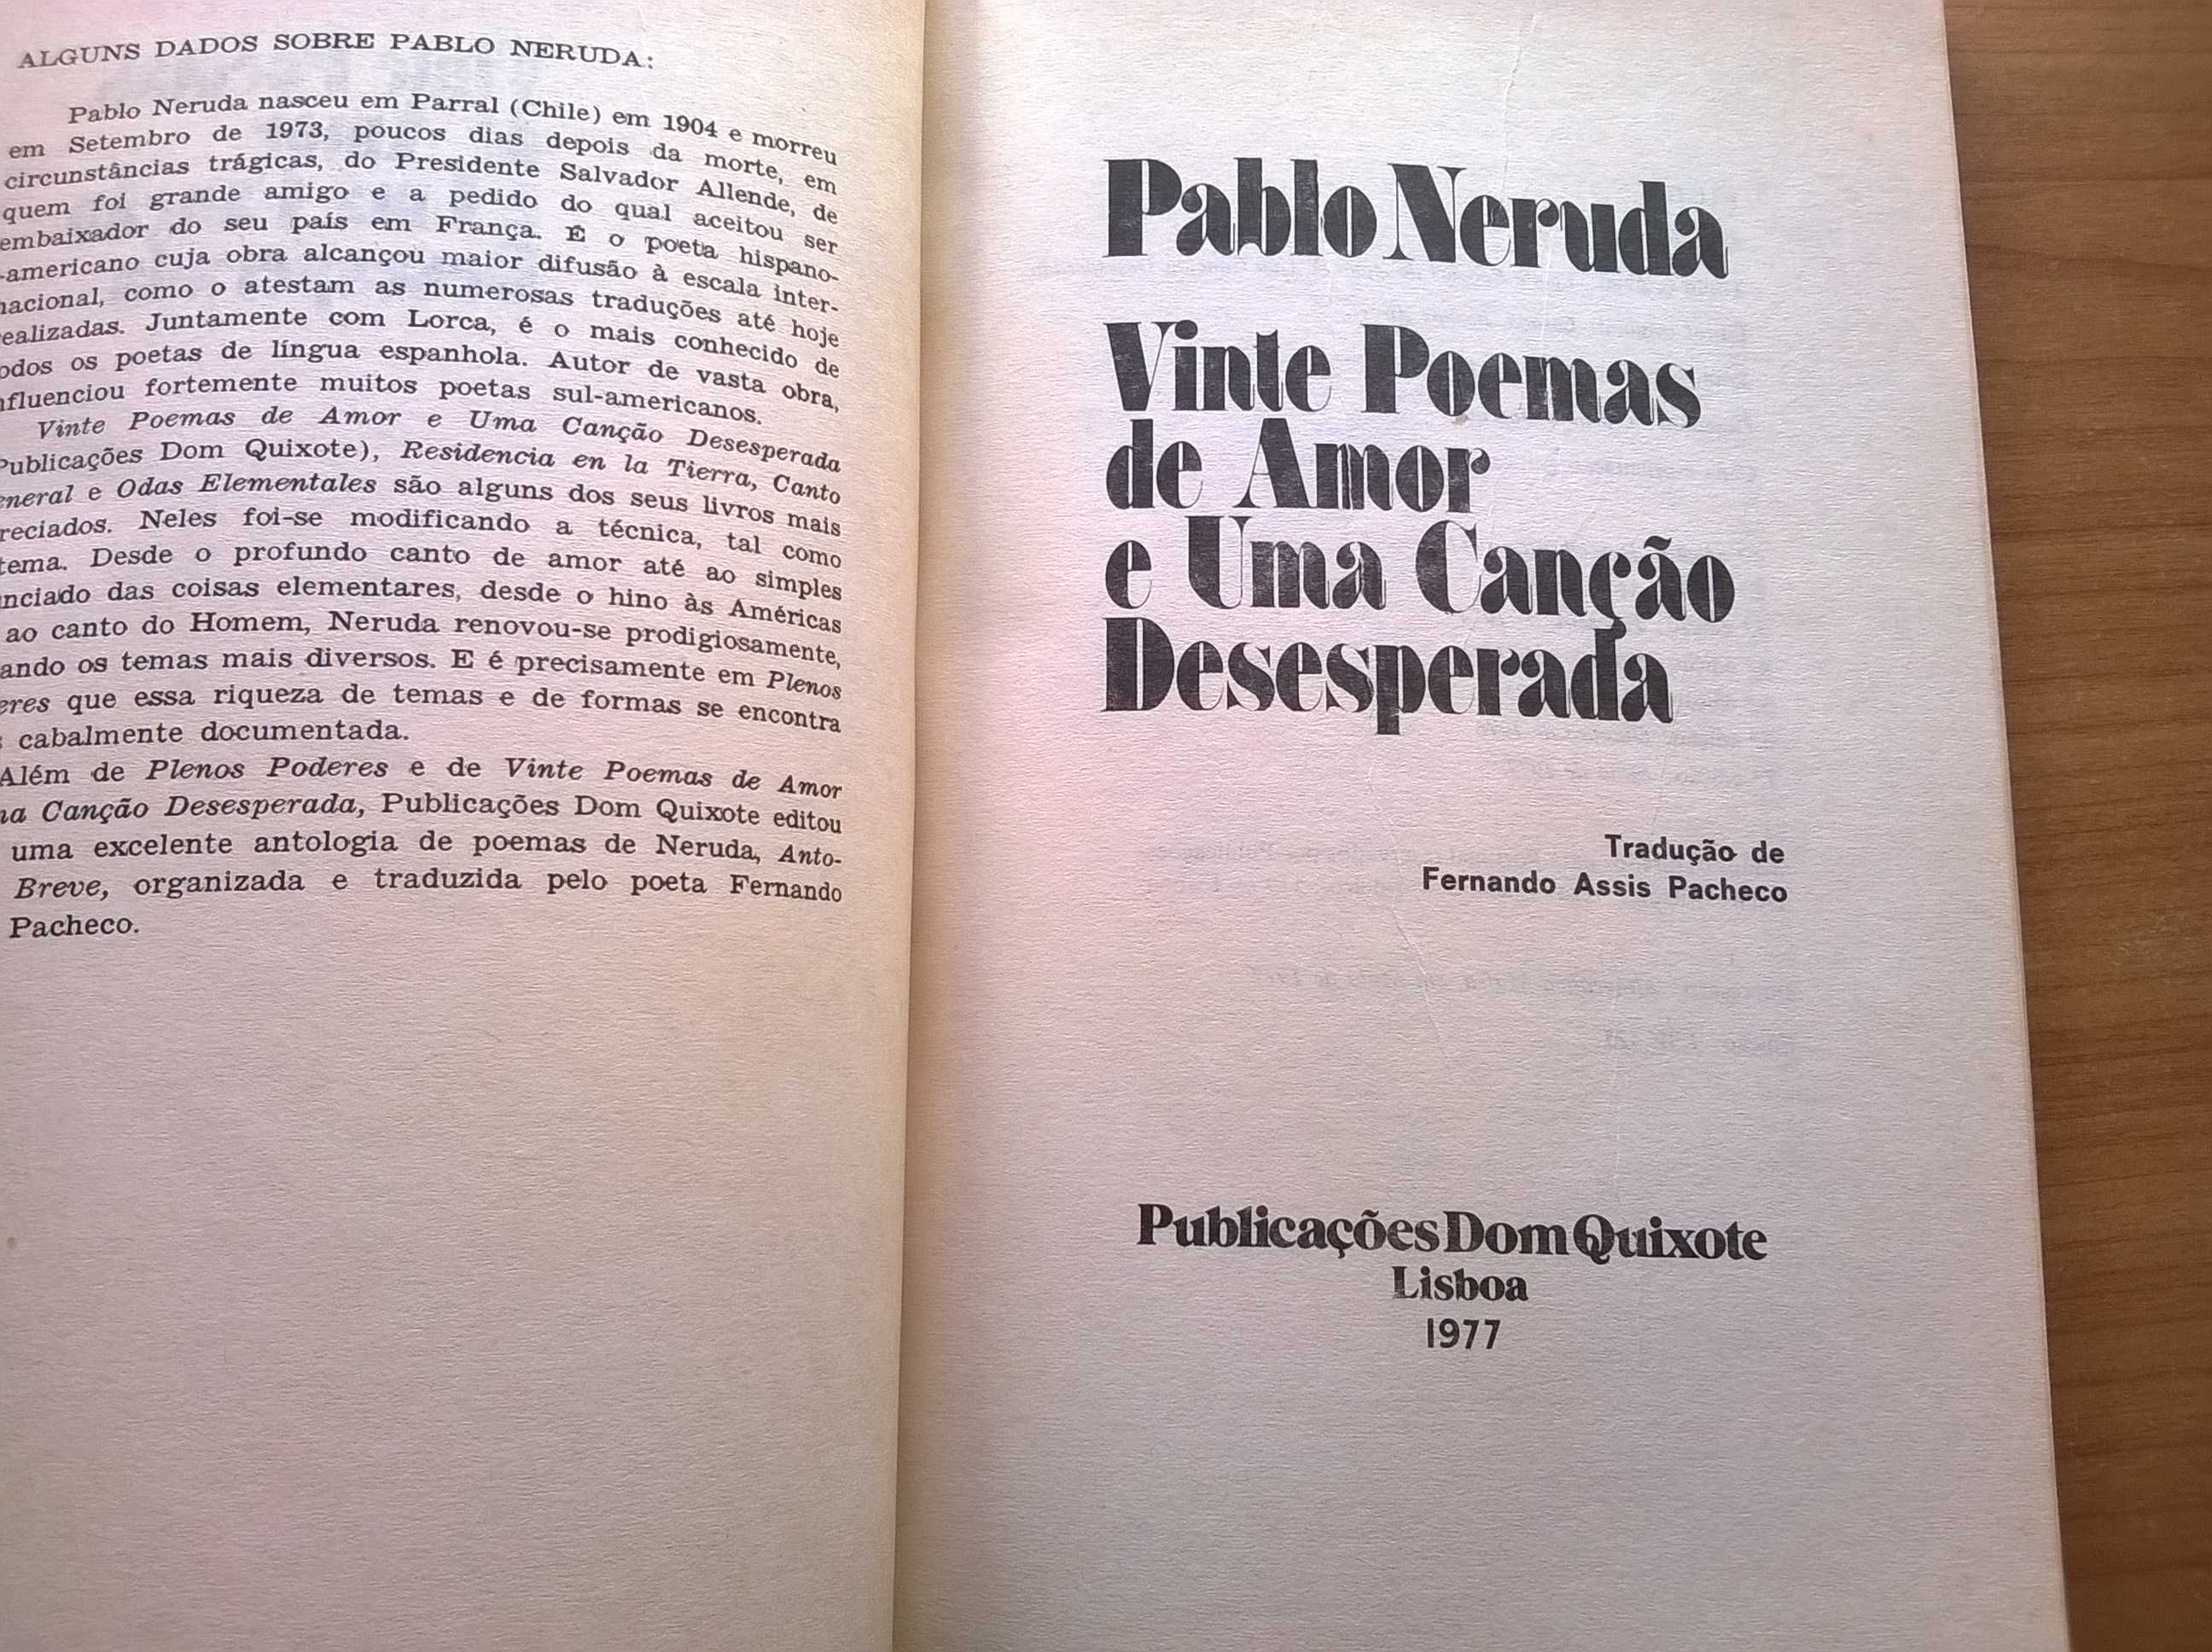 Vinte Poemas de Amor e uma Canção Desesperada - Pablo Neruda